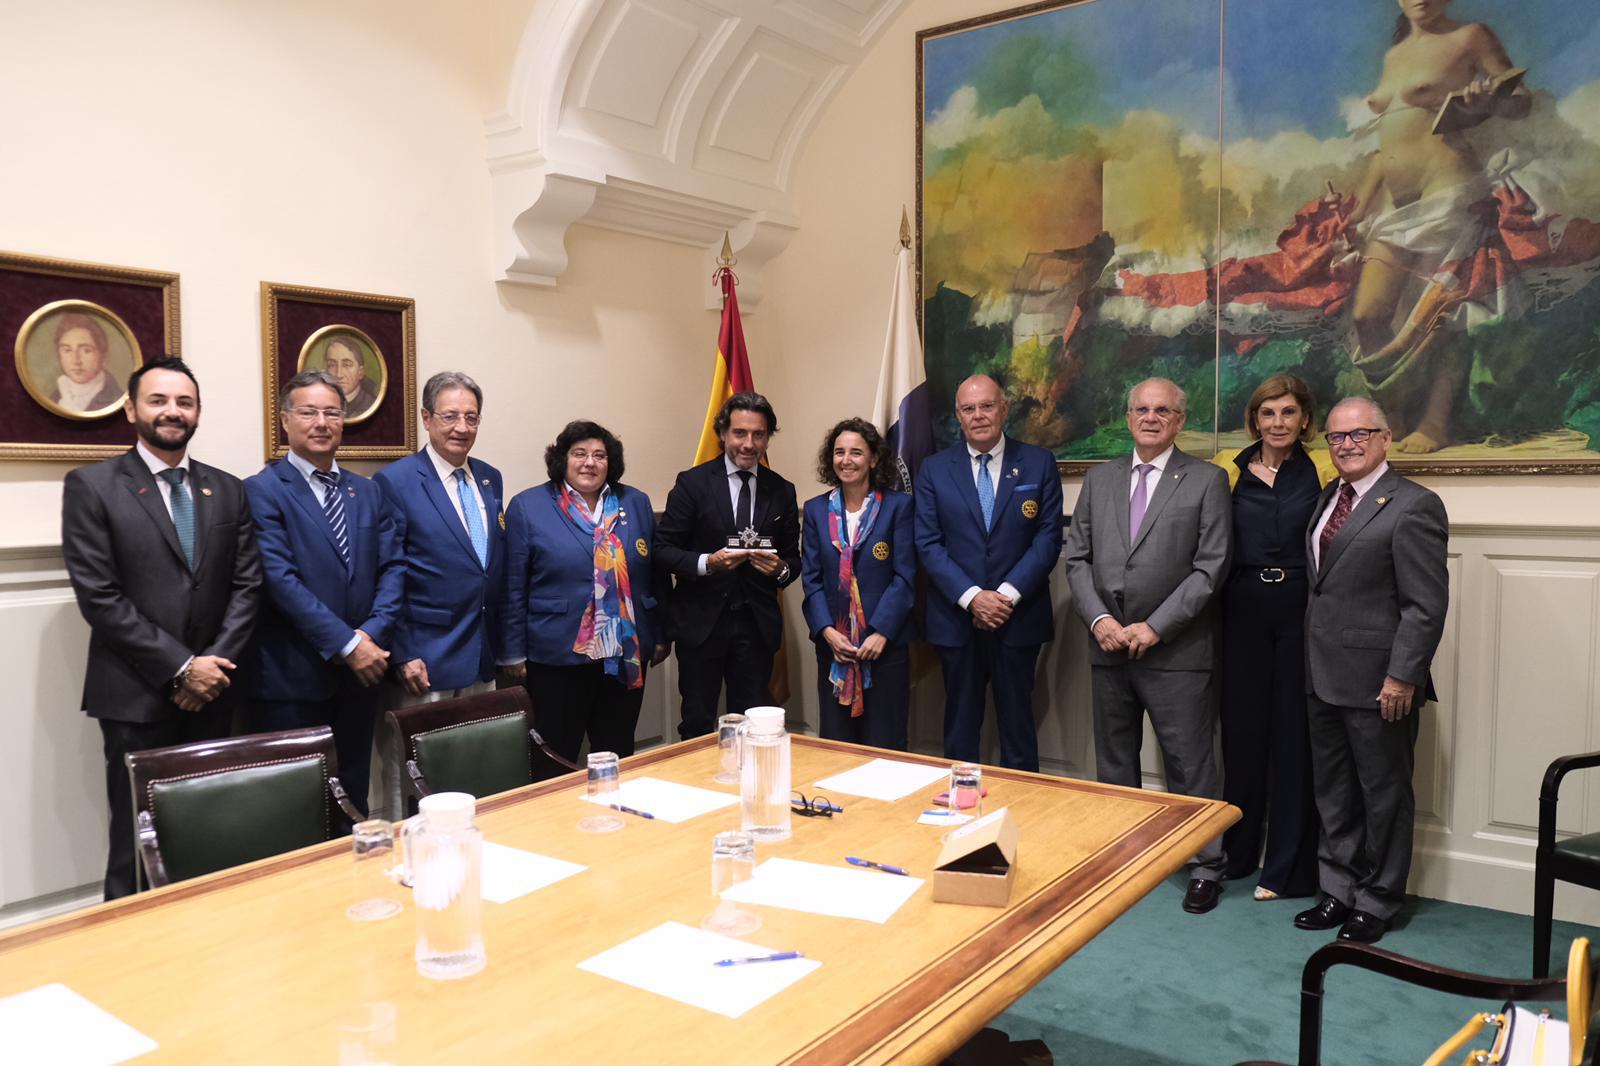 Los gobernadores rotarios de los distritos españoles y uno portugués junto con los presidentes de clubes de Tenerife se reúnen con Gustavo Matos, presidente del parlamento de Canarias.